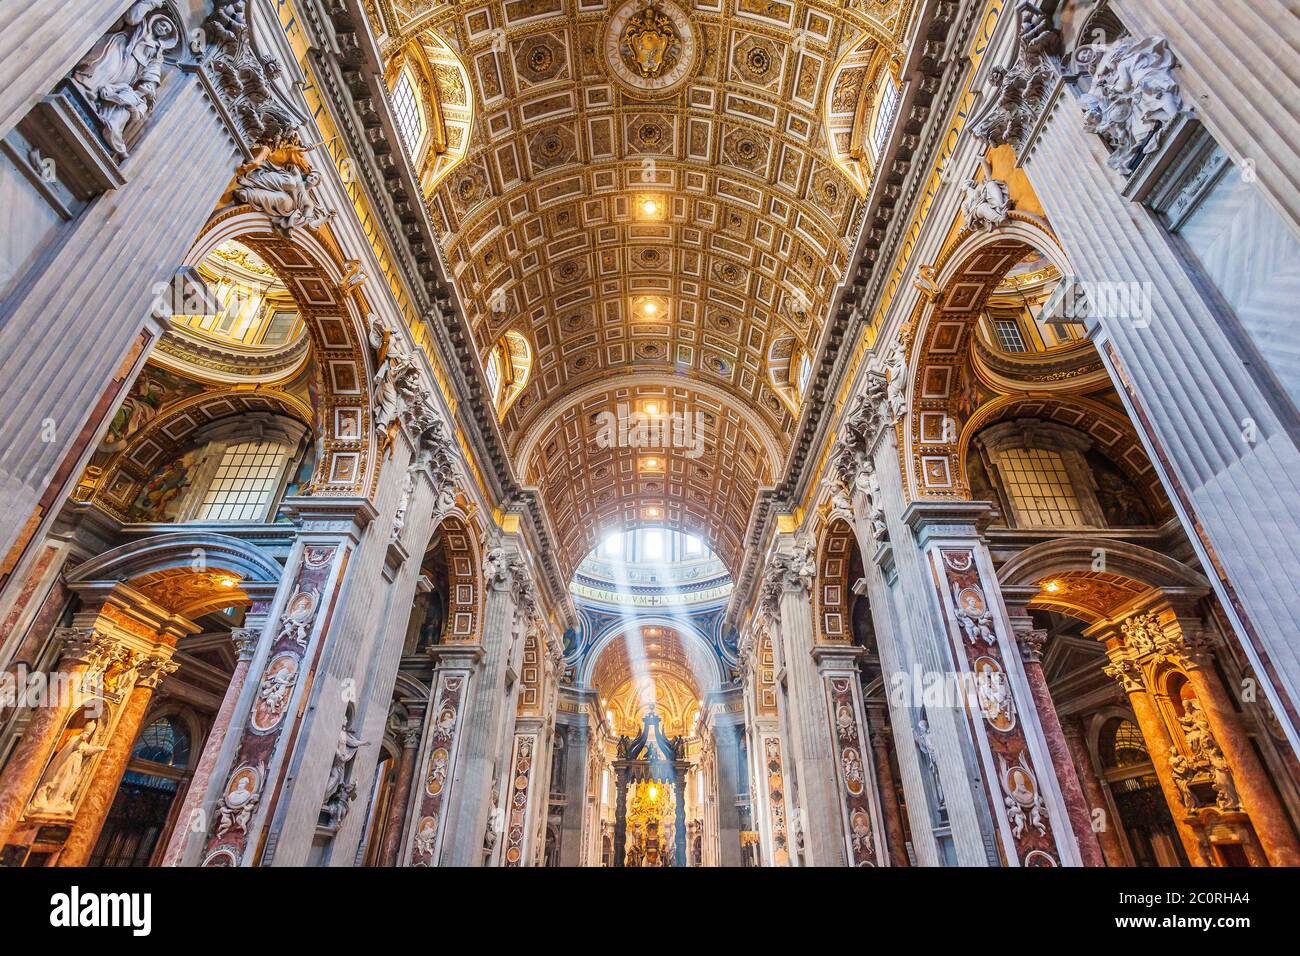 Roma, Italia - 3 de noviembre de 2019: Dentro de la basílica de San Pedro (San Pietro). Ciudad del Vaticano. Foto de stock